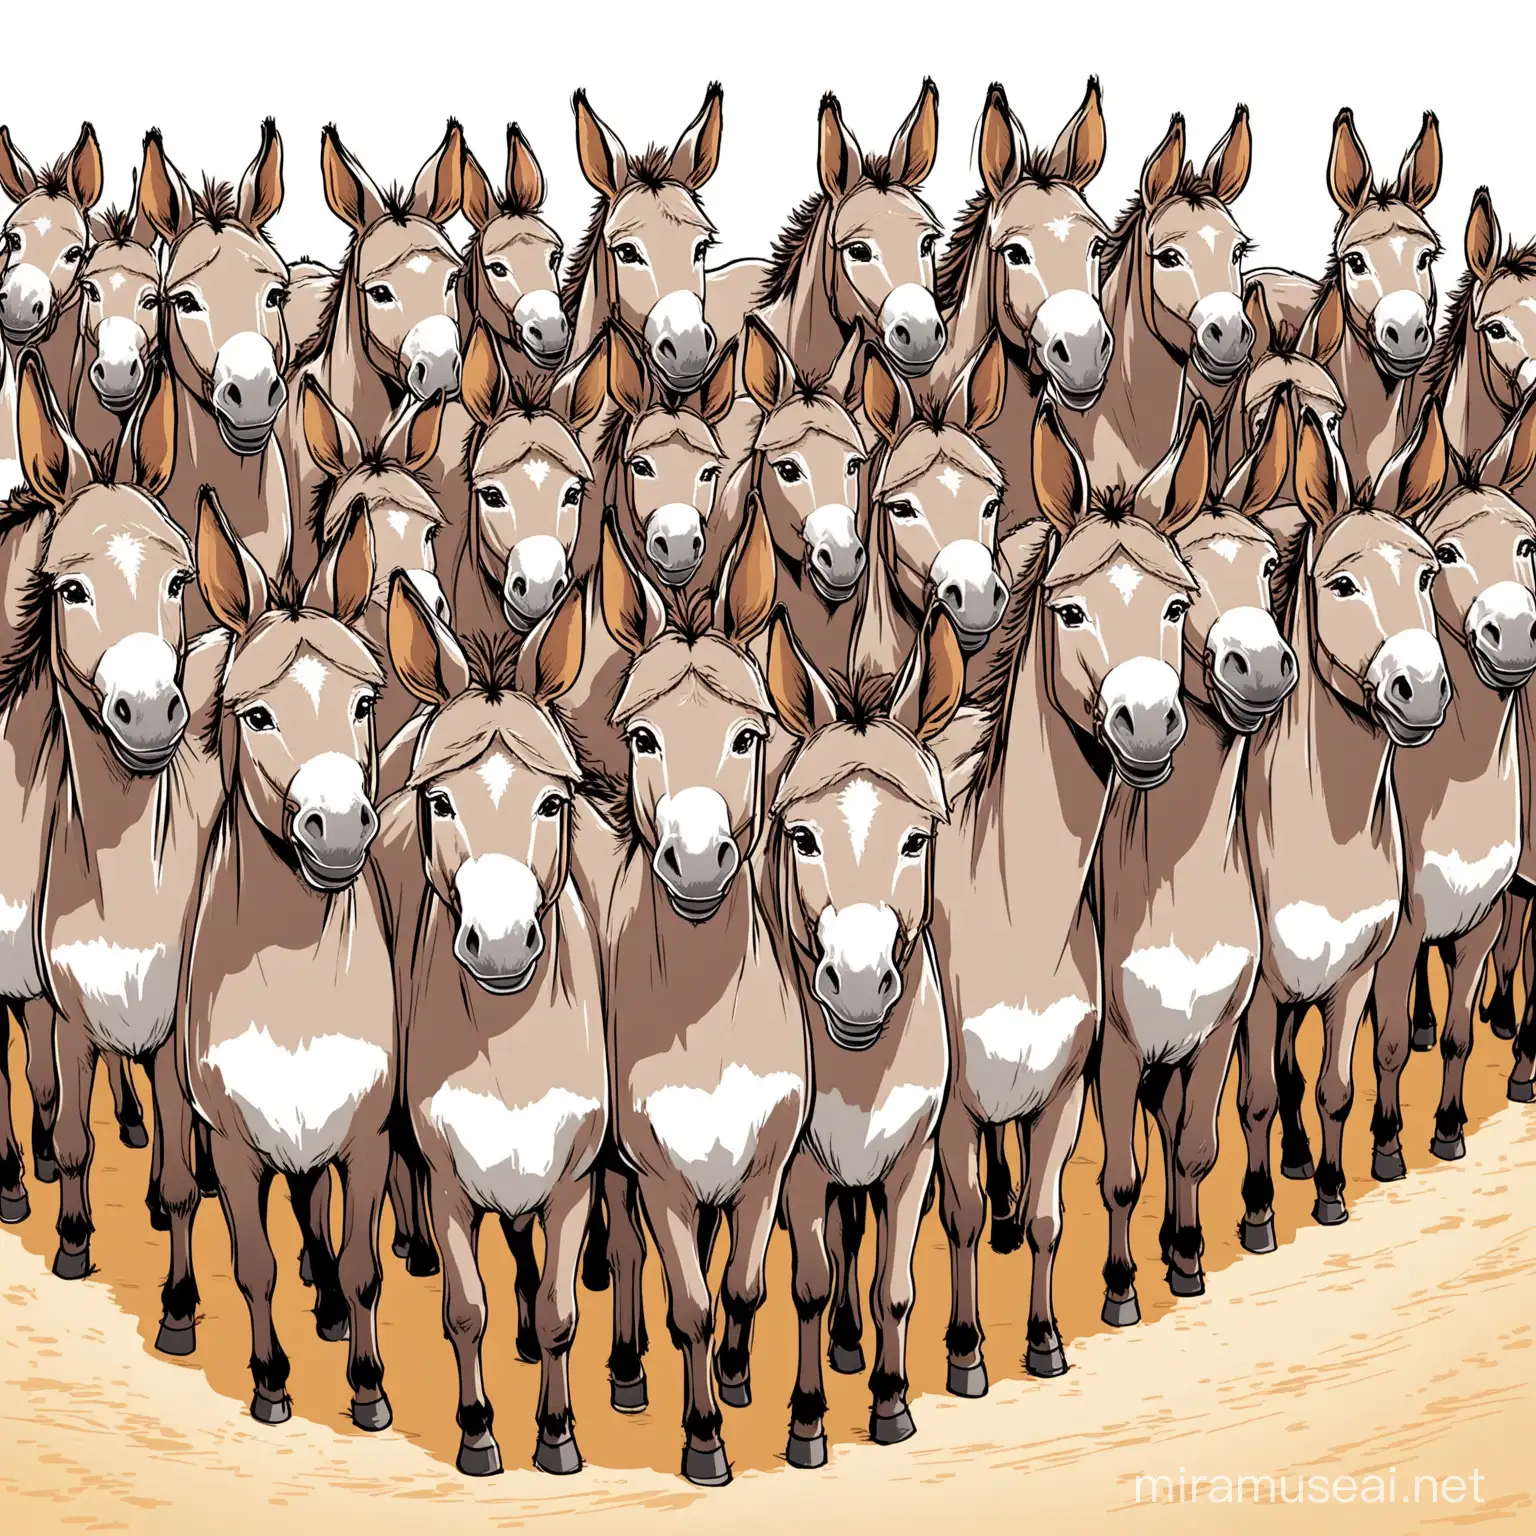 Cartoon Donkeys in a Whimsical 49Donkey Parade